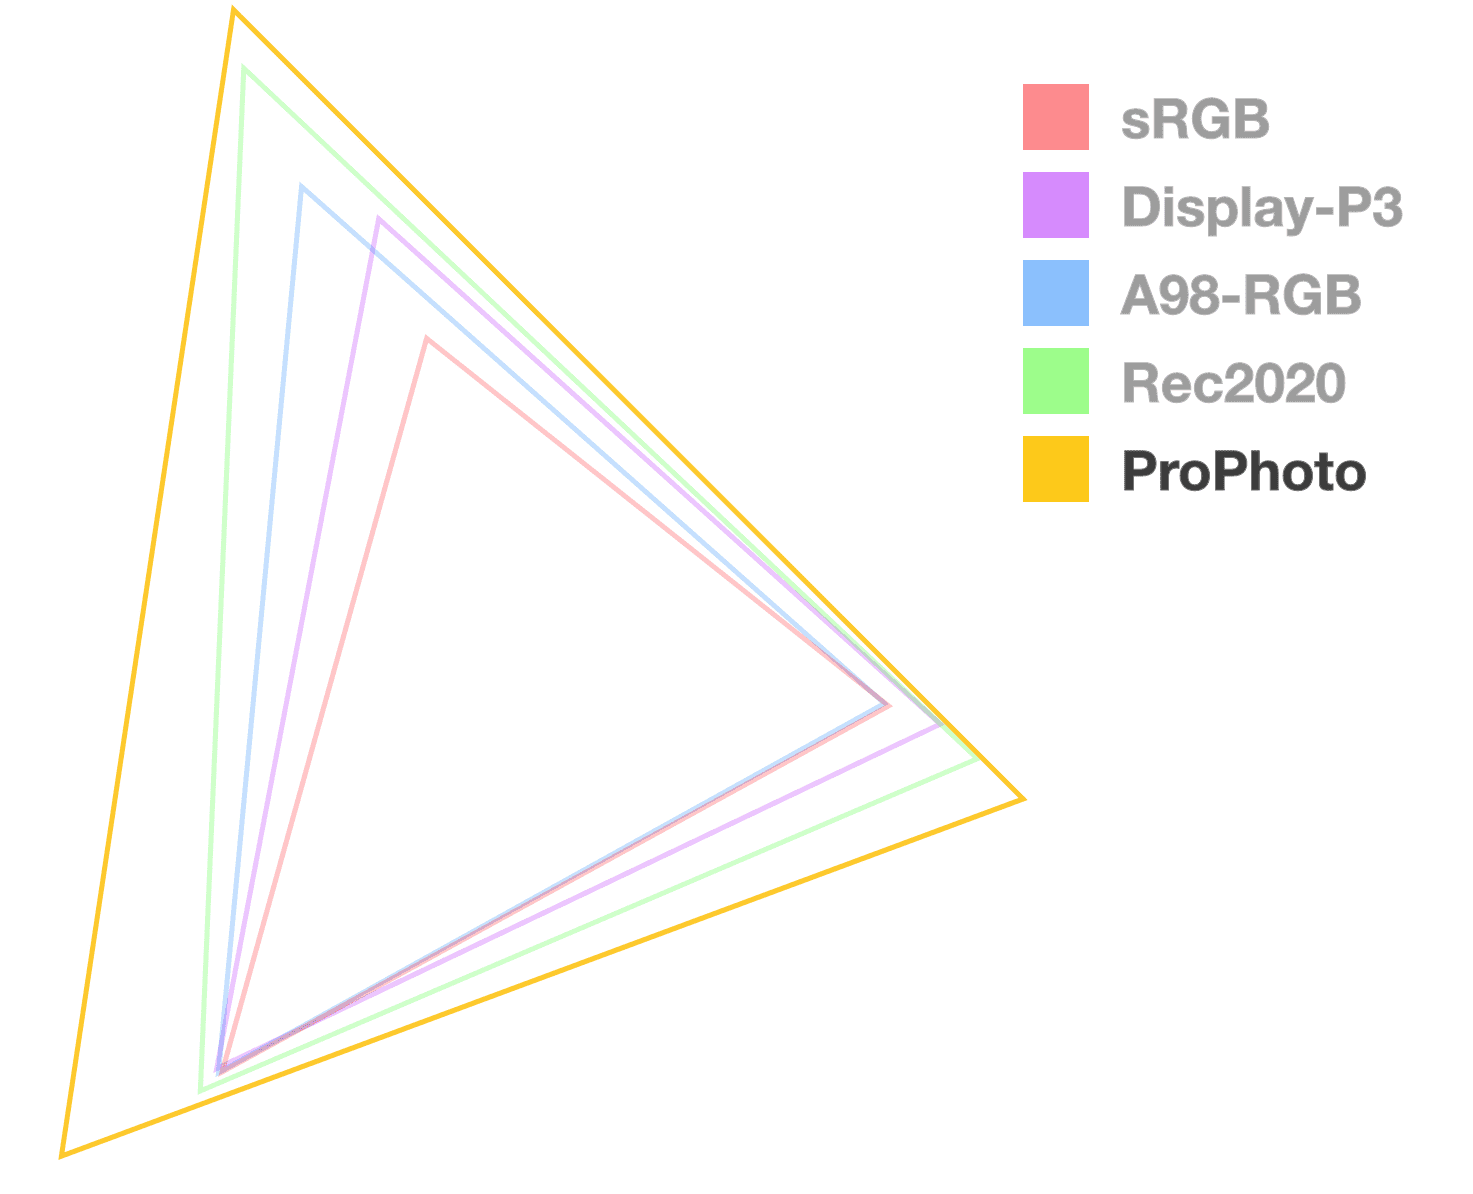 إنّ مثلث ProPhotos هو الوحيد التعتيم الذي يجعله غير شفاف تمامًا، وذلك للمساعدة في عرض حجم السلسلة. إنه يبدو الأكبر.